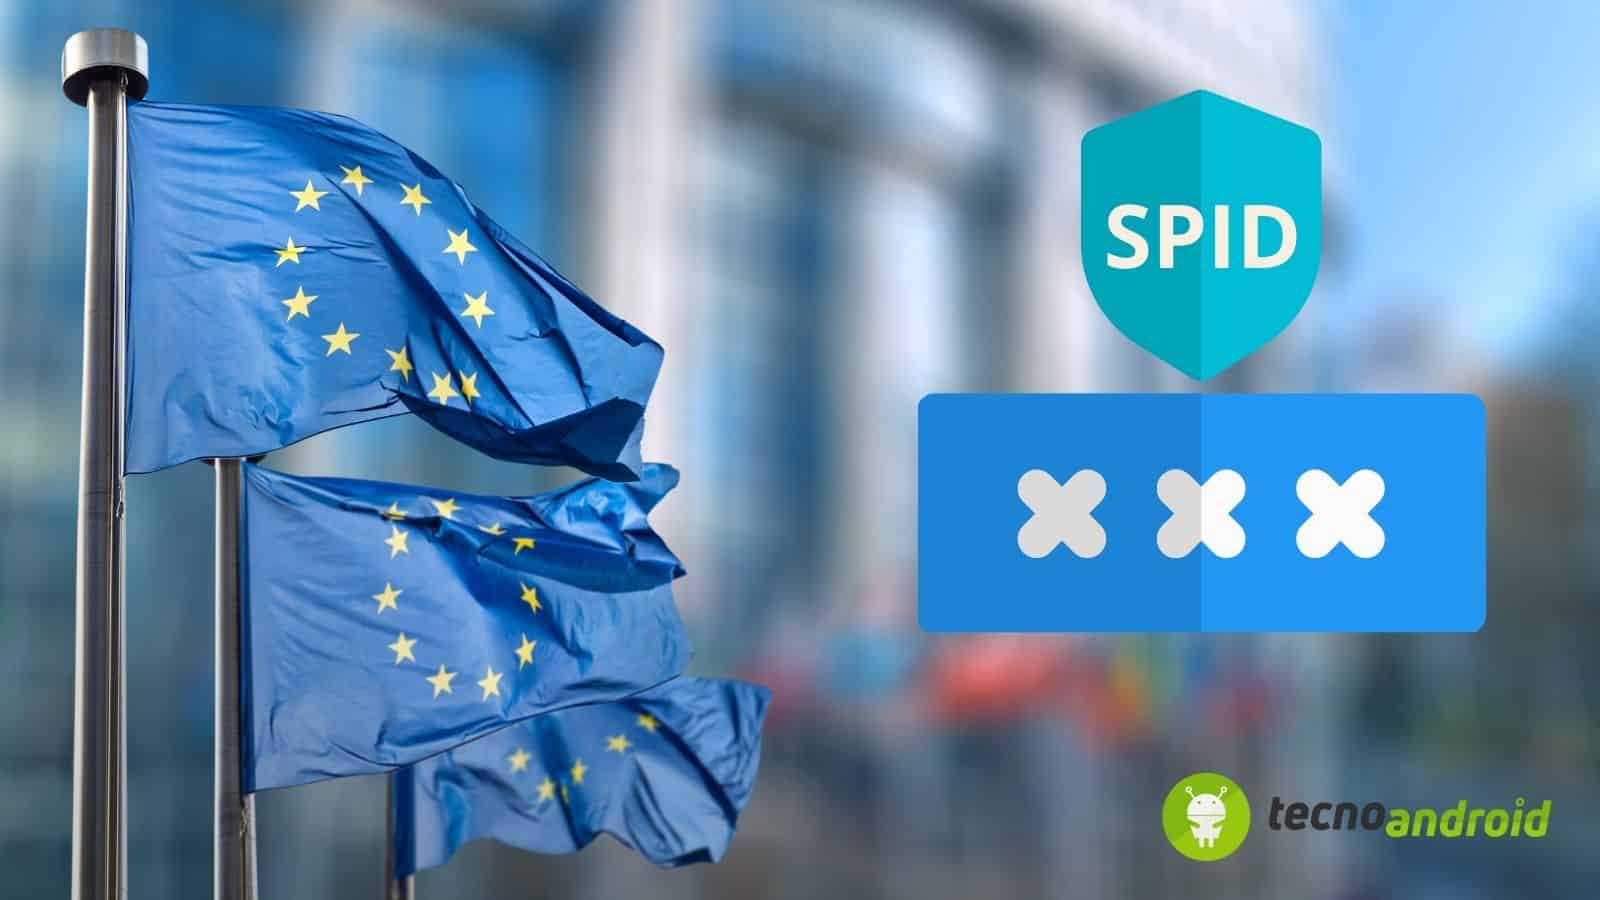 SPID Unico Europeo: l'Europa promette l'integrazione entro il 2026